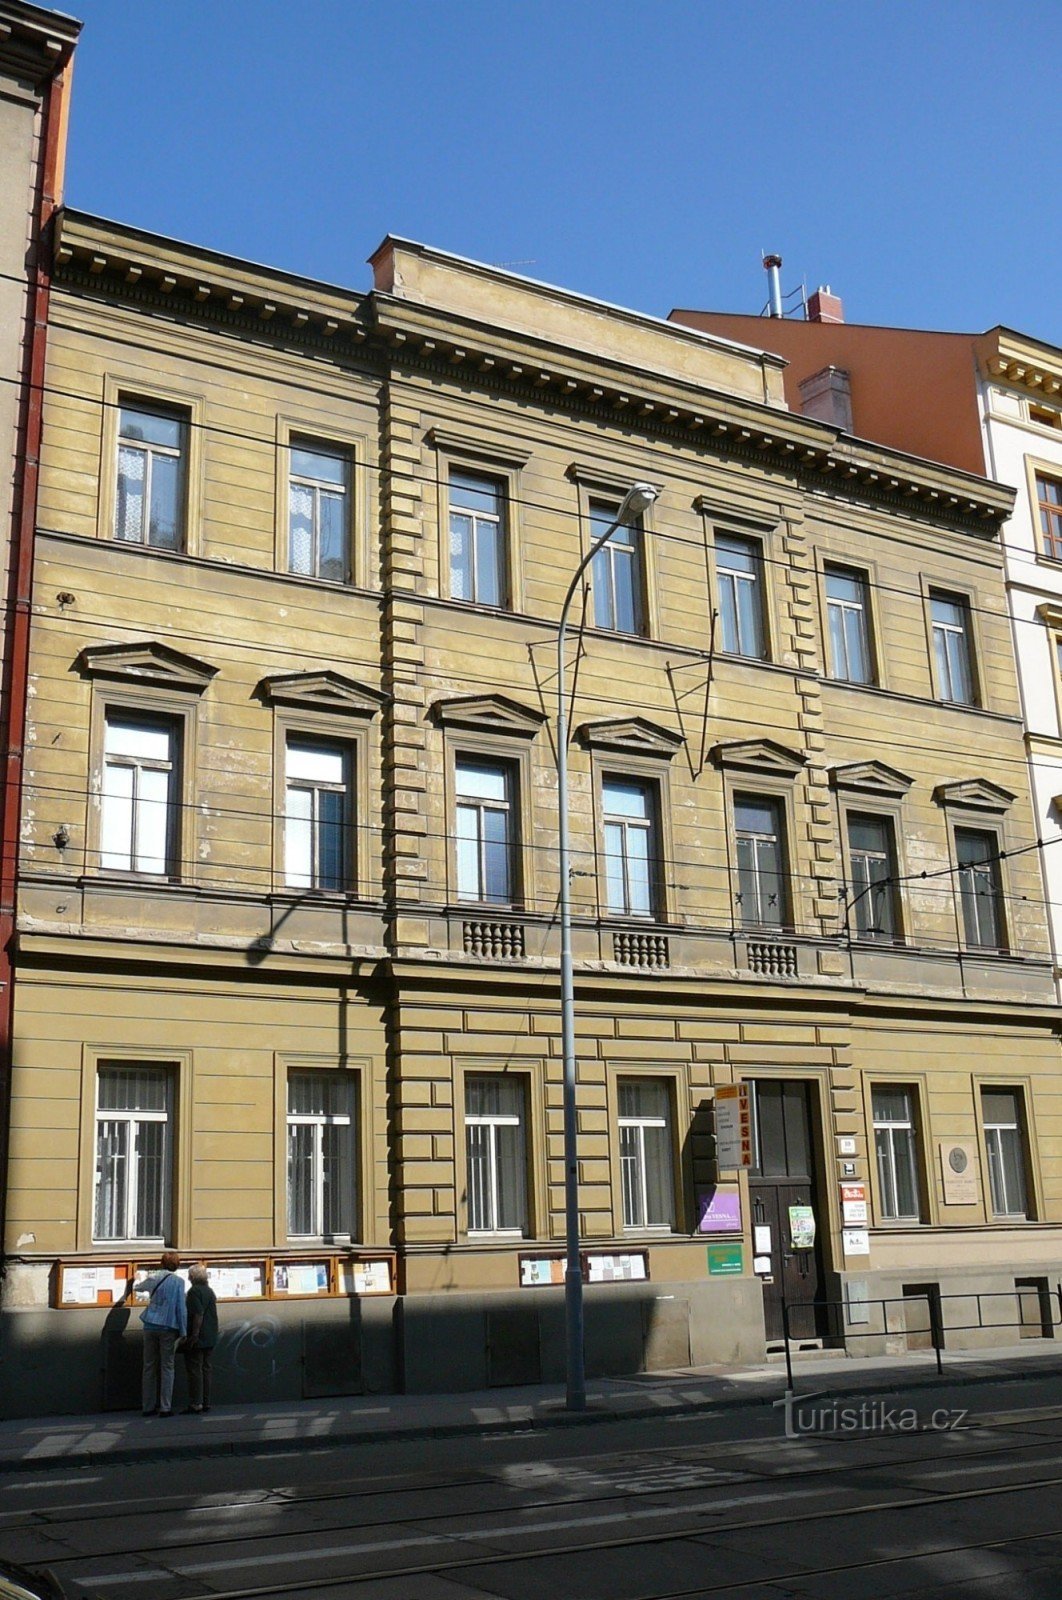 Casa de la Údolní 10, unde se află și astăzi asociația Vesna și camera lui Jurkovič pot fi vizualizate aici